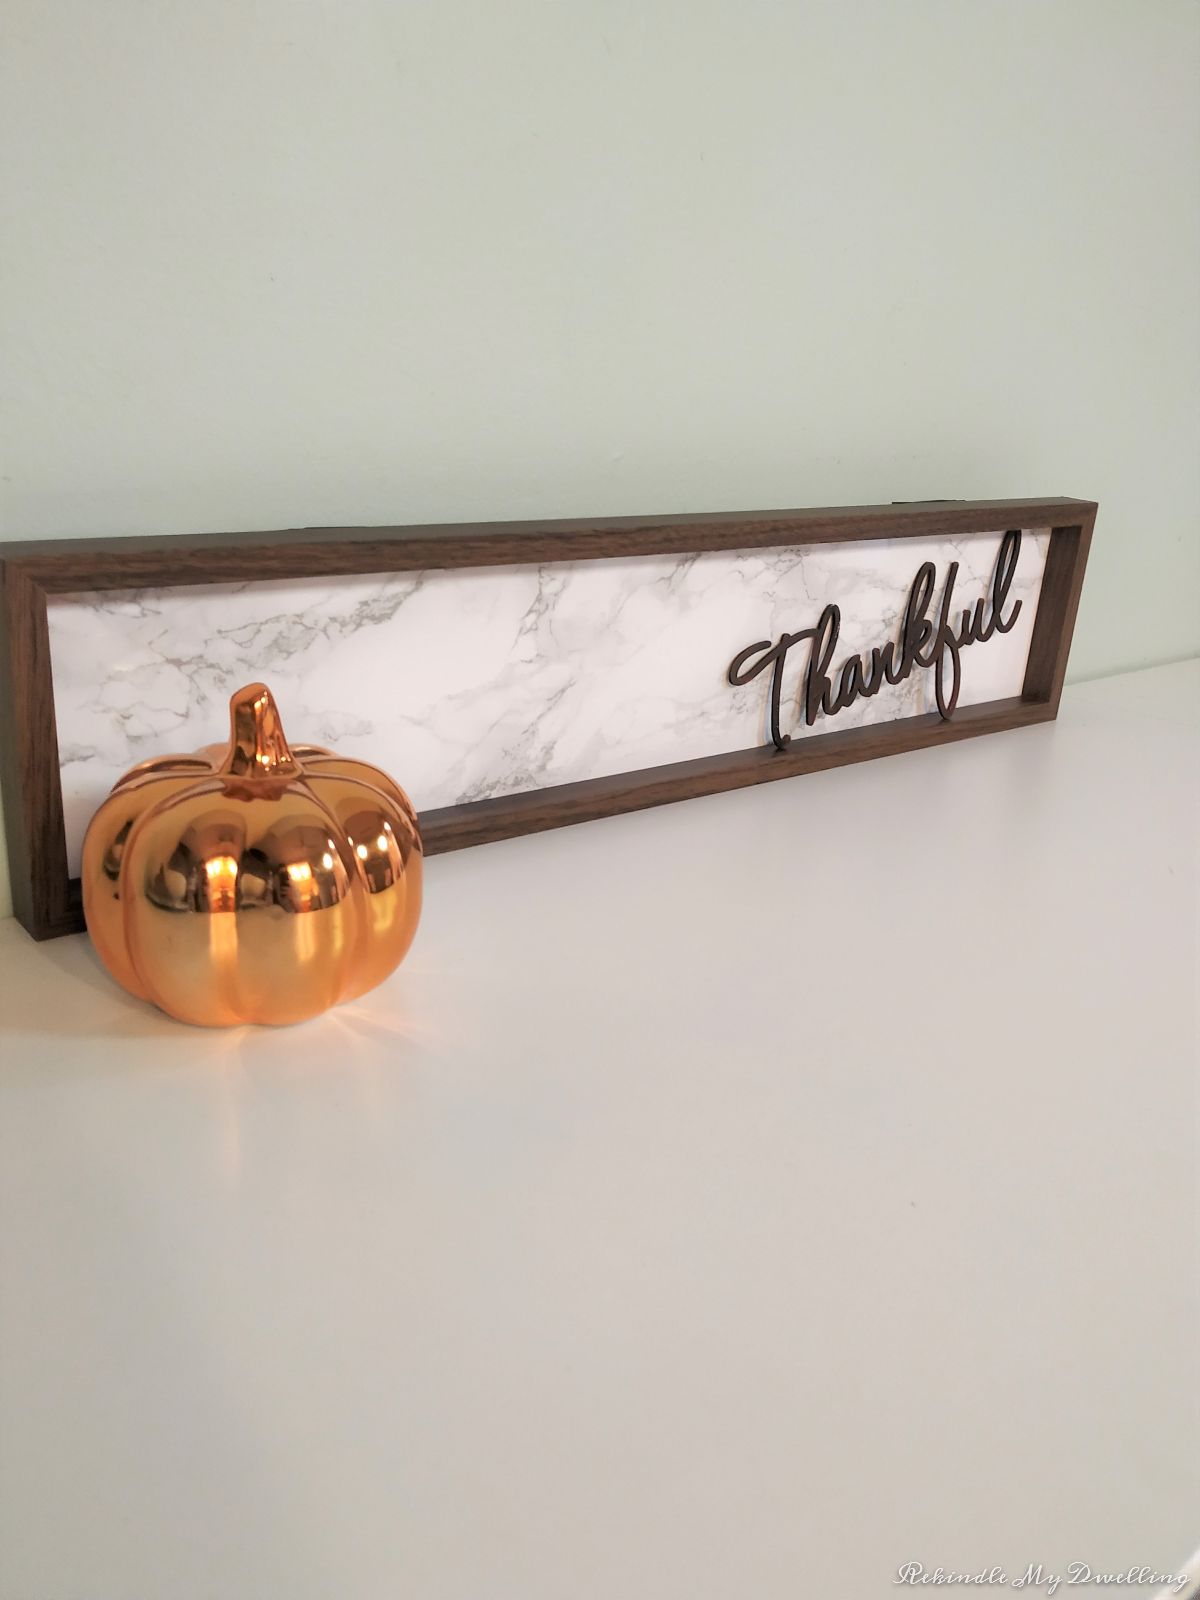 DIY thankful wood sign displayed next to a pumpkin.